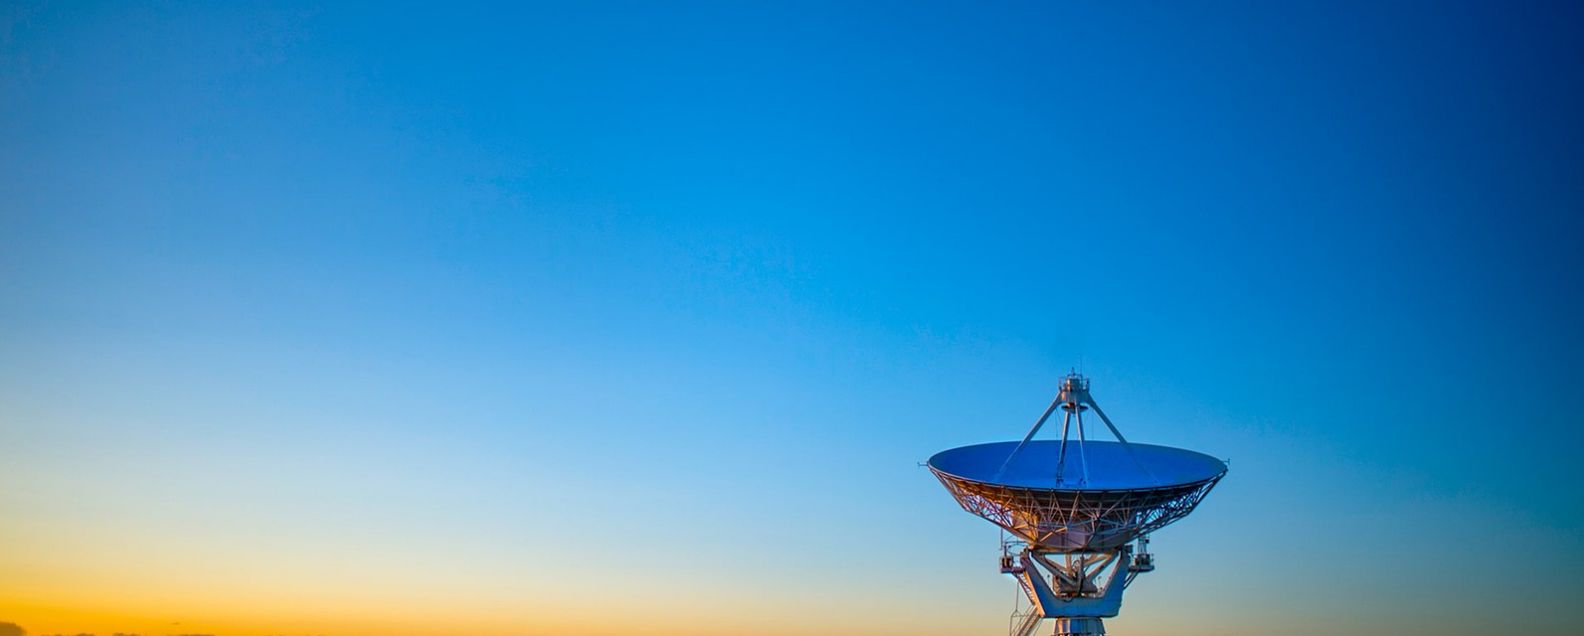 전경에 위성 방송 수신 안테나가 있는 푸른 하늘